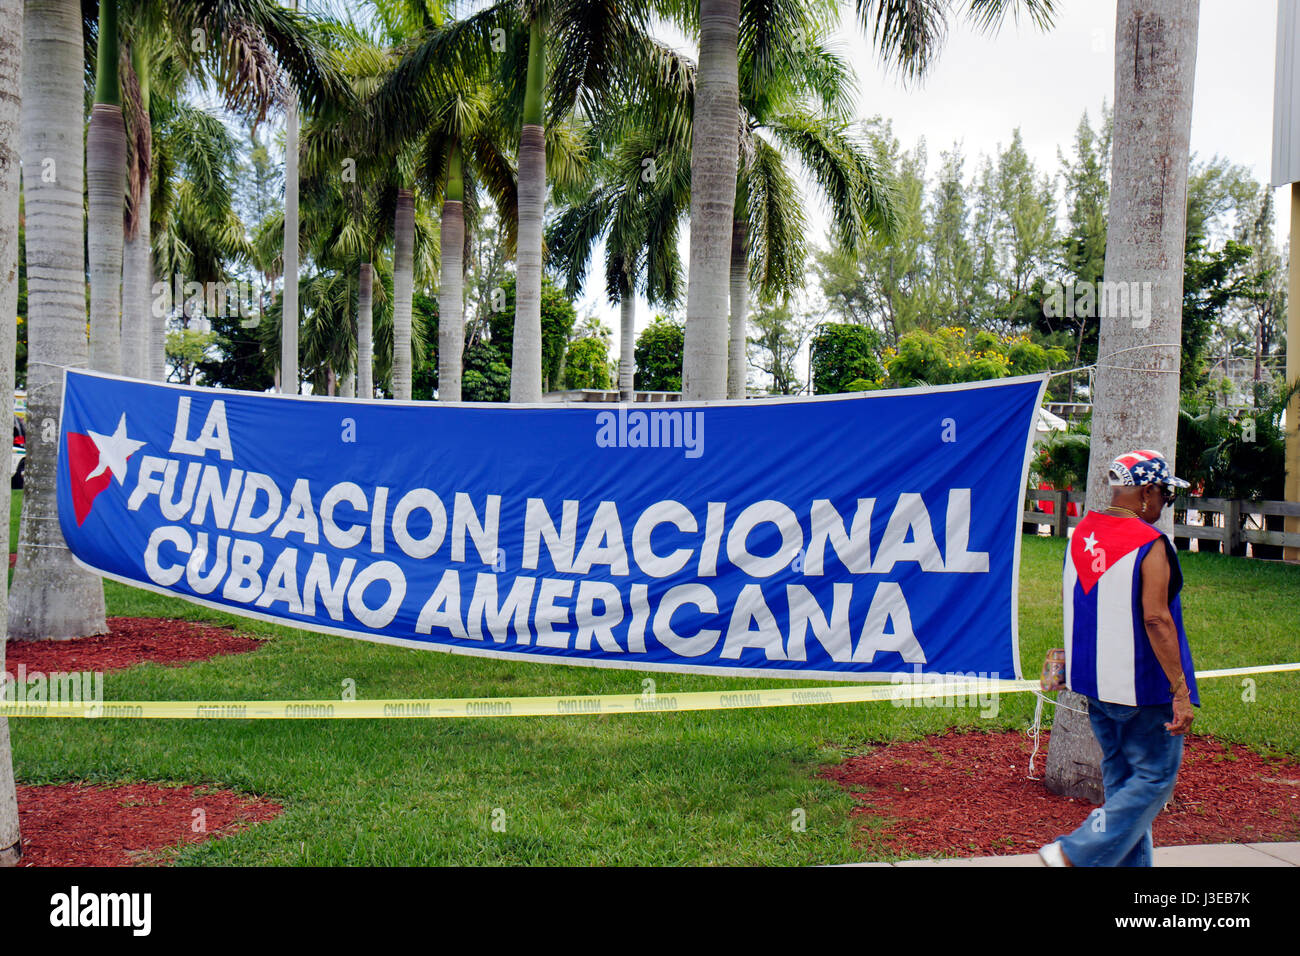 Miami Florida,Tropical Park,progetto di soccorso dell'esodo cubano,festival,festival,politica,organizzazione esilio anti Castro,Fondazione Nazionale Cubana americana Foto Stock